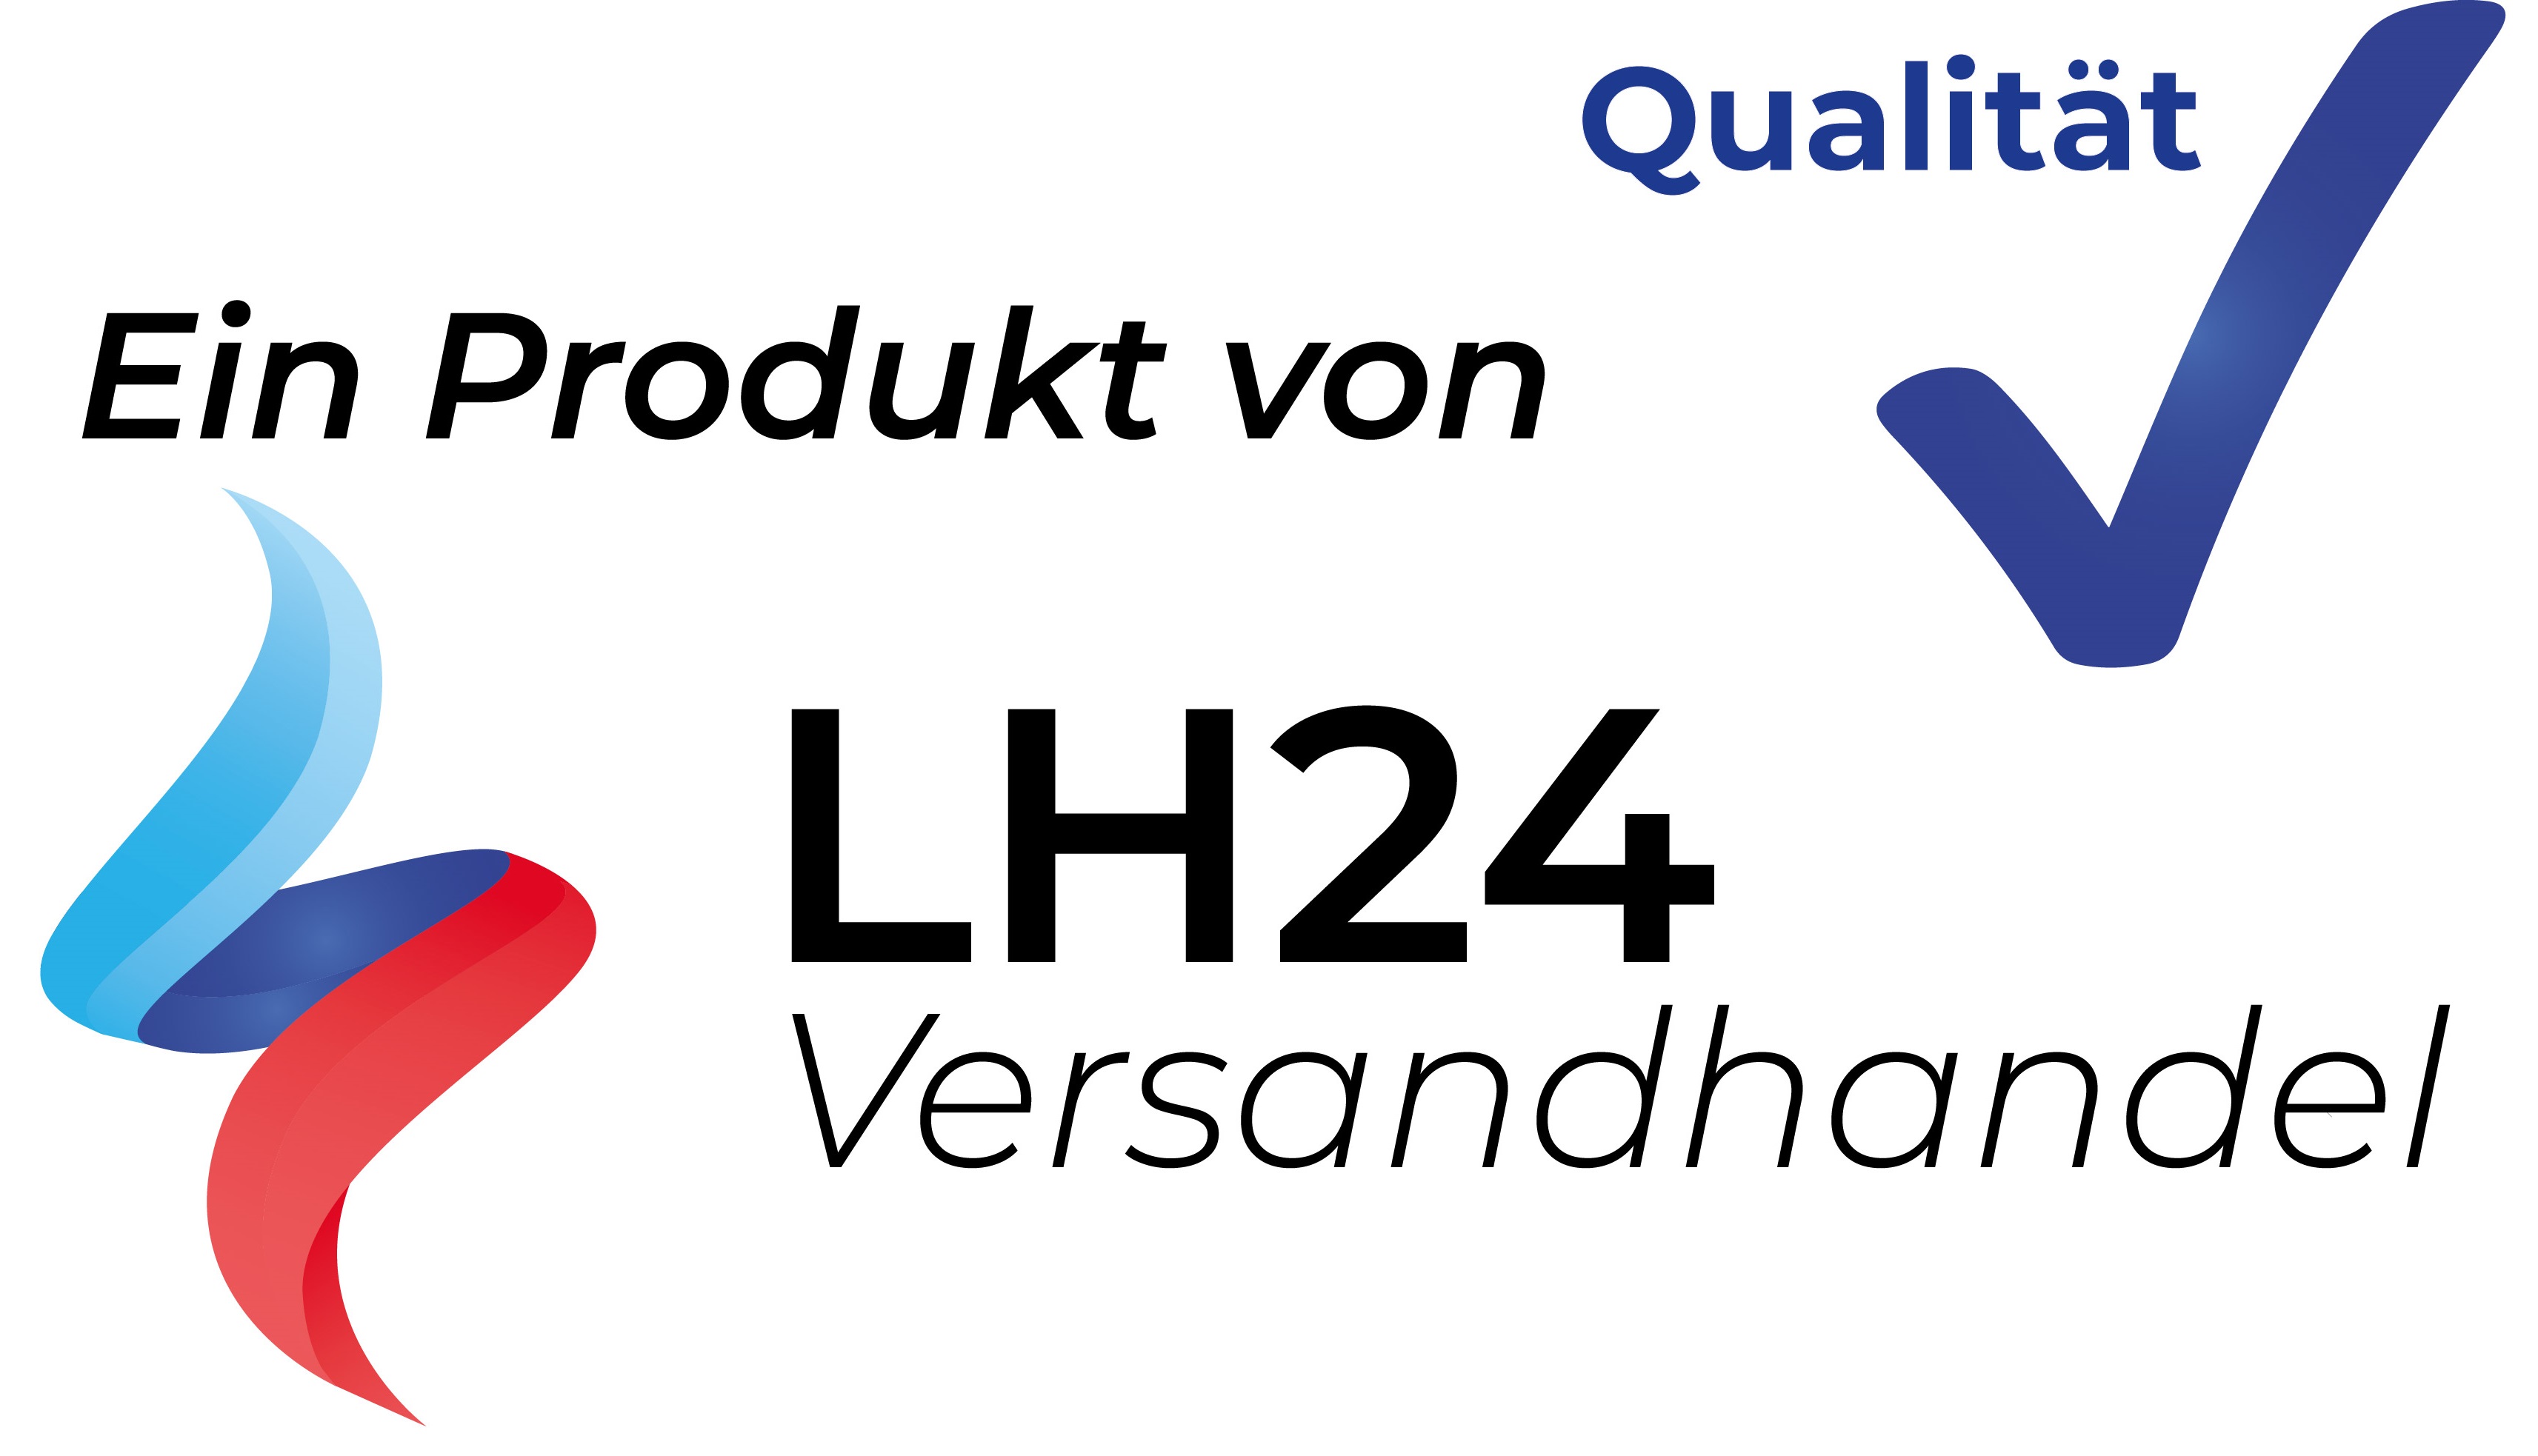 LH24 Versandhandel